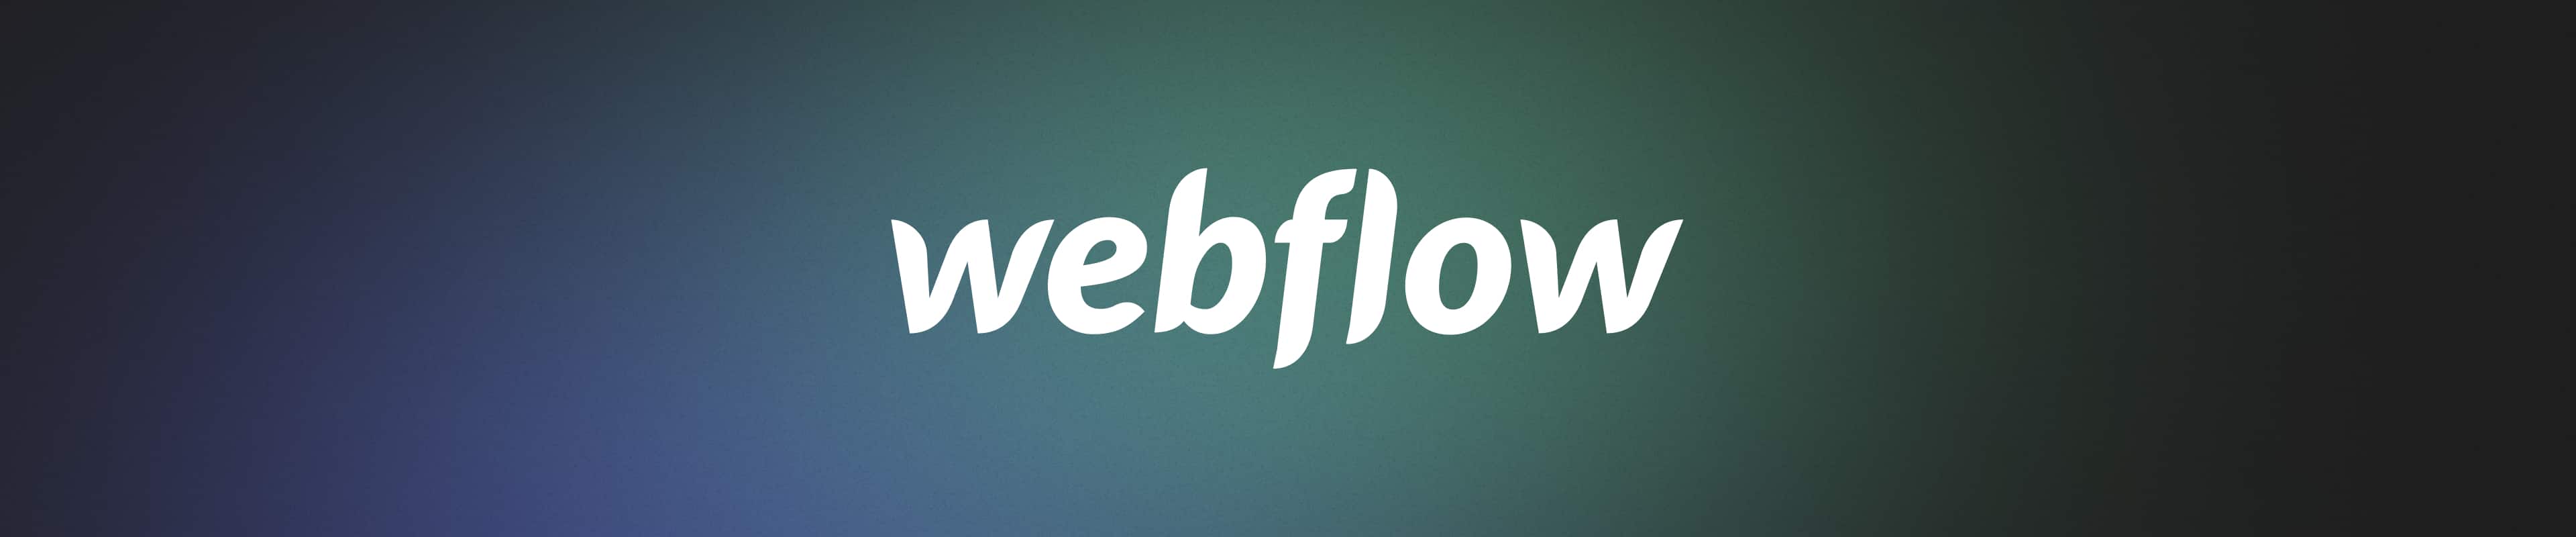 Webflow web development agency